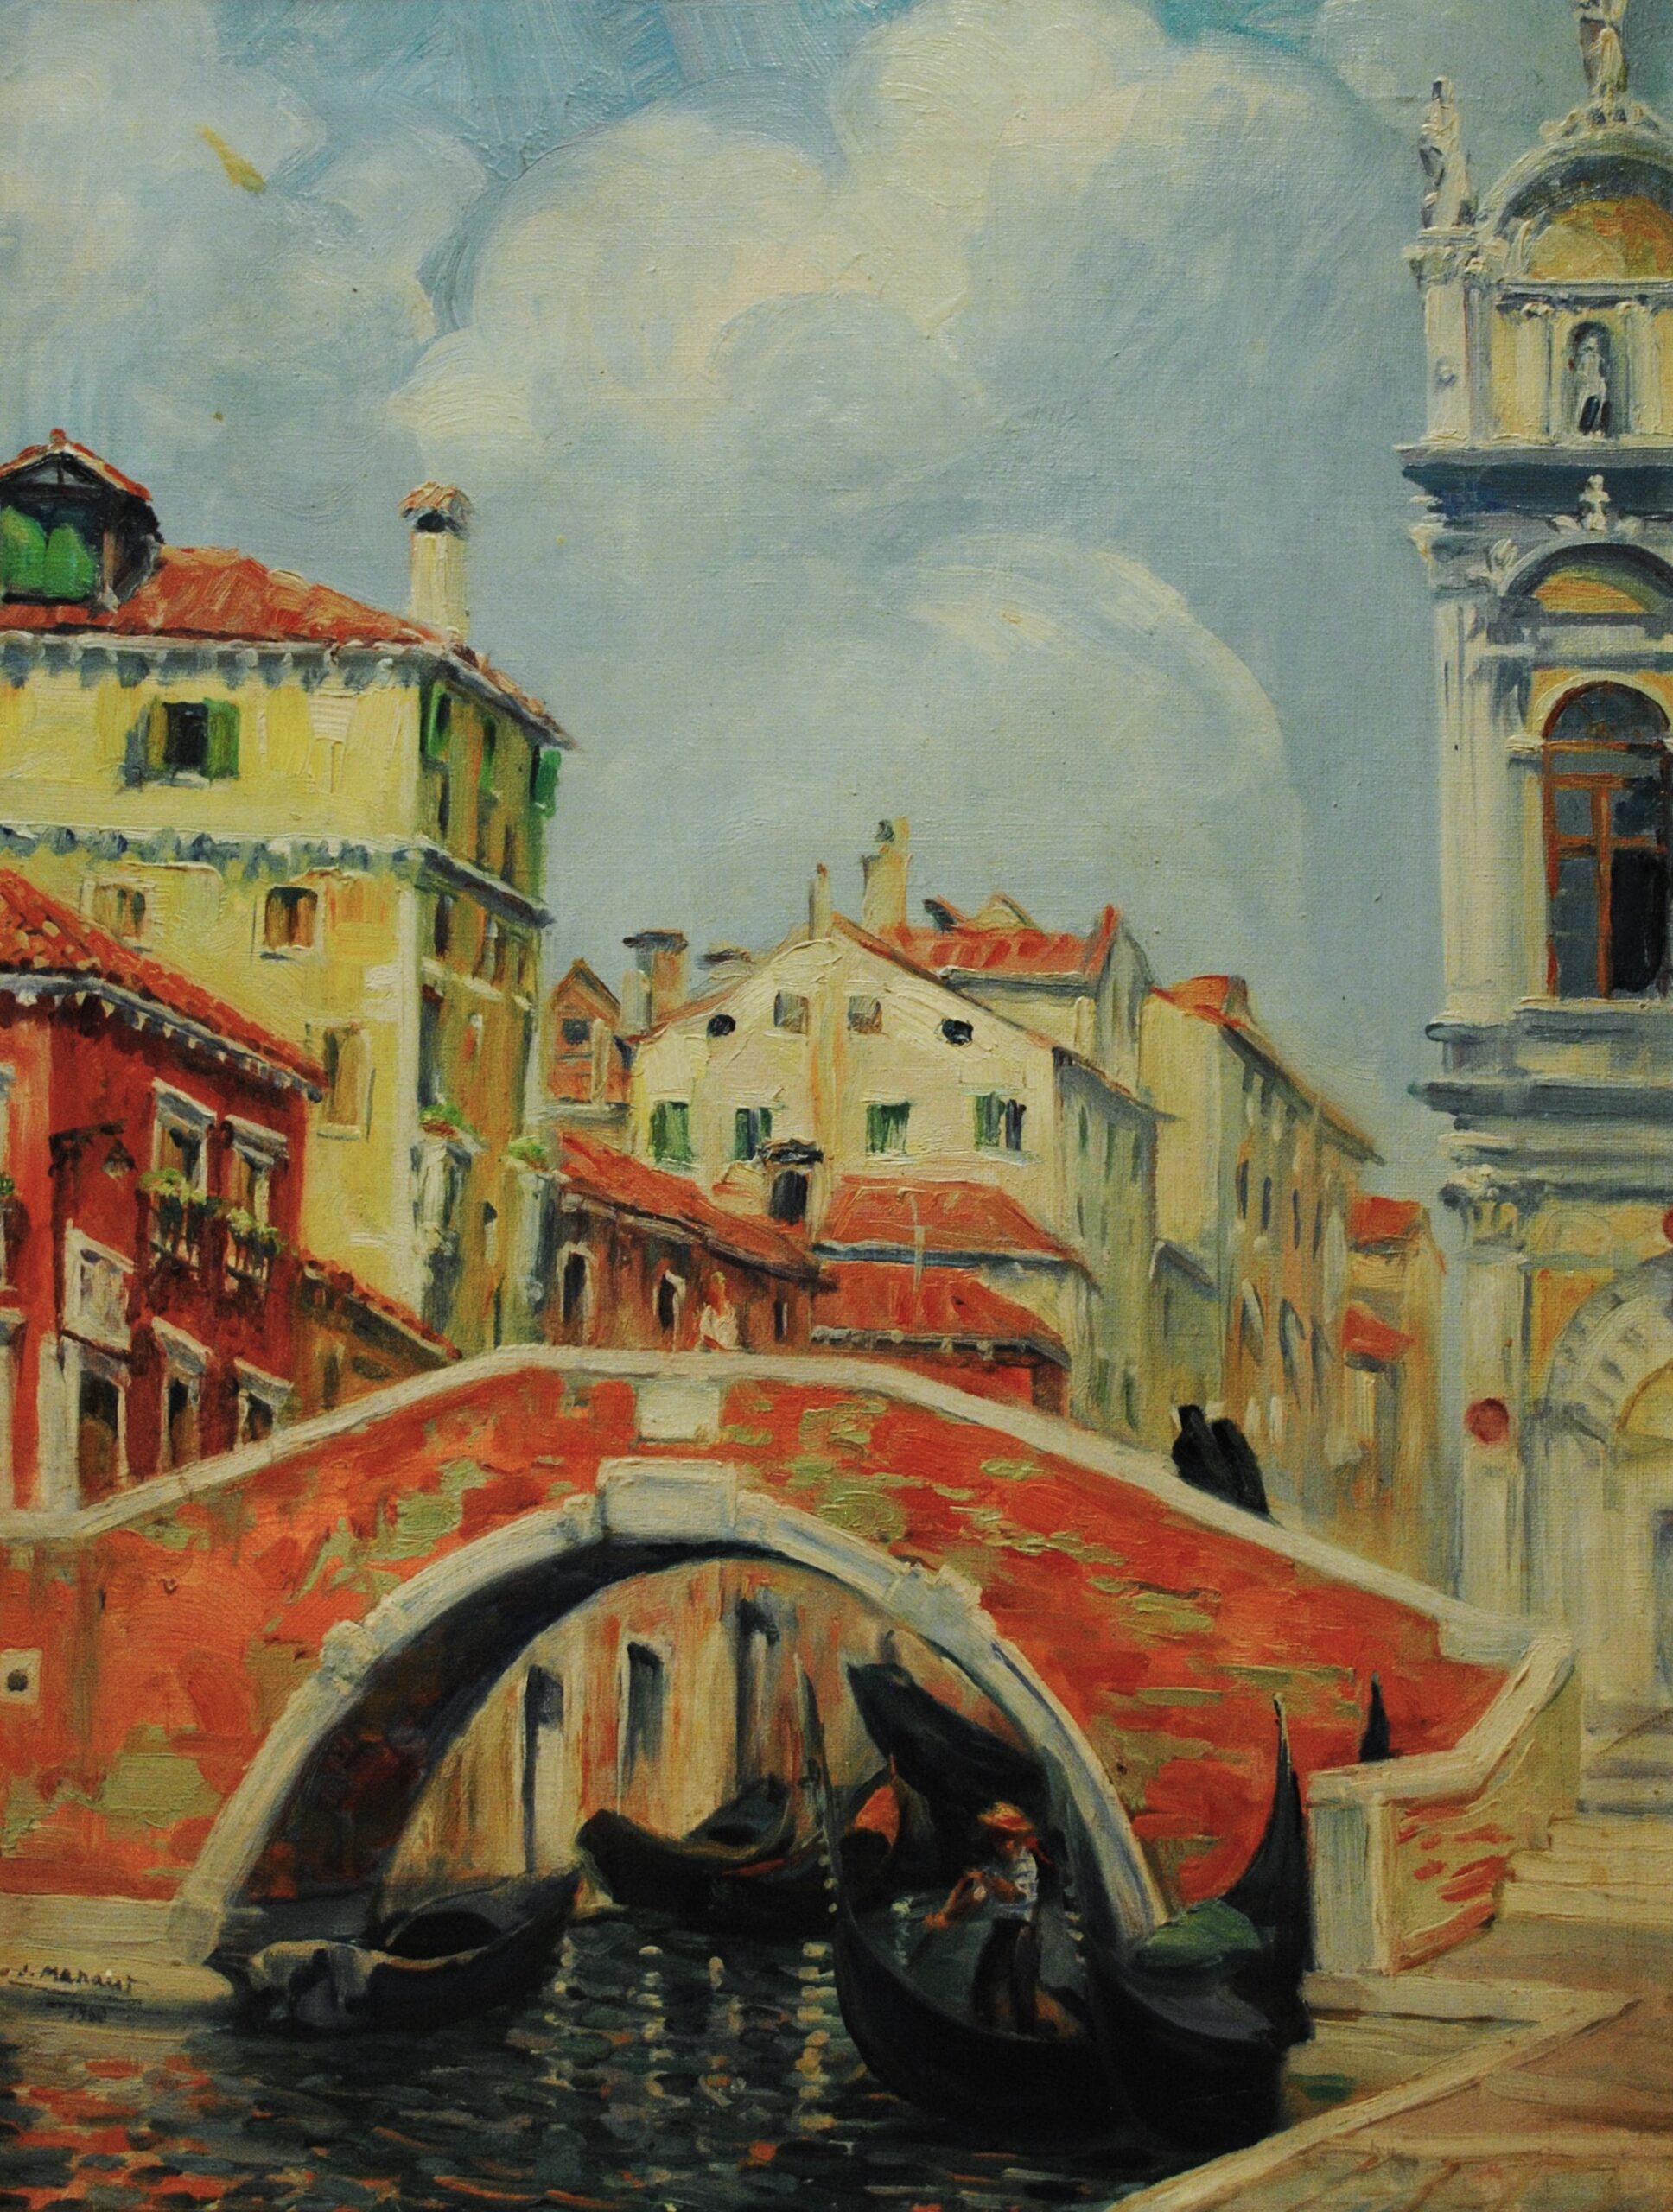 Pintura de José Manaut titulada Puente Rialto, Venecia, 1960. Óleo sobre lienzo.